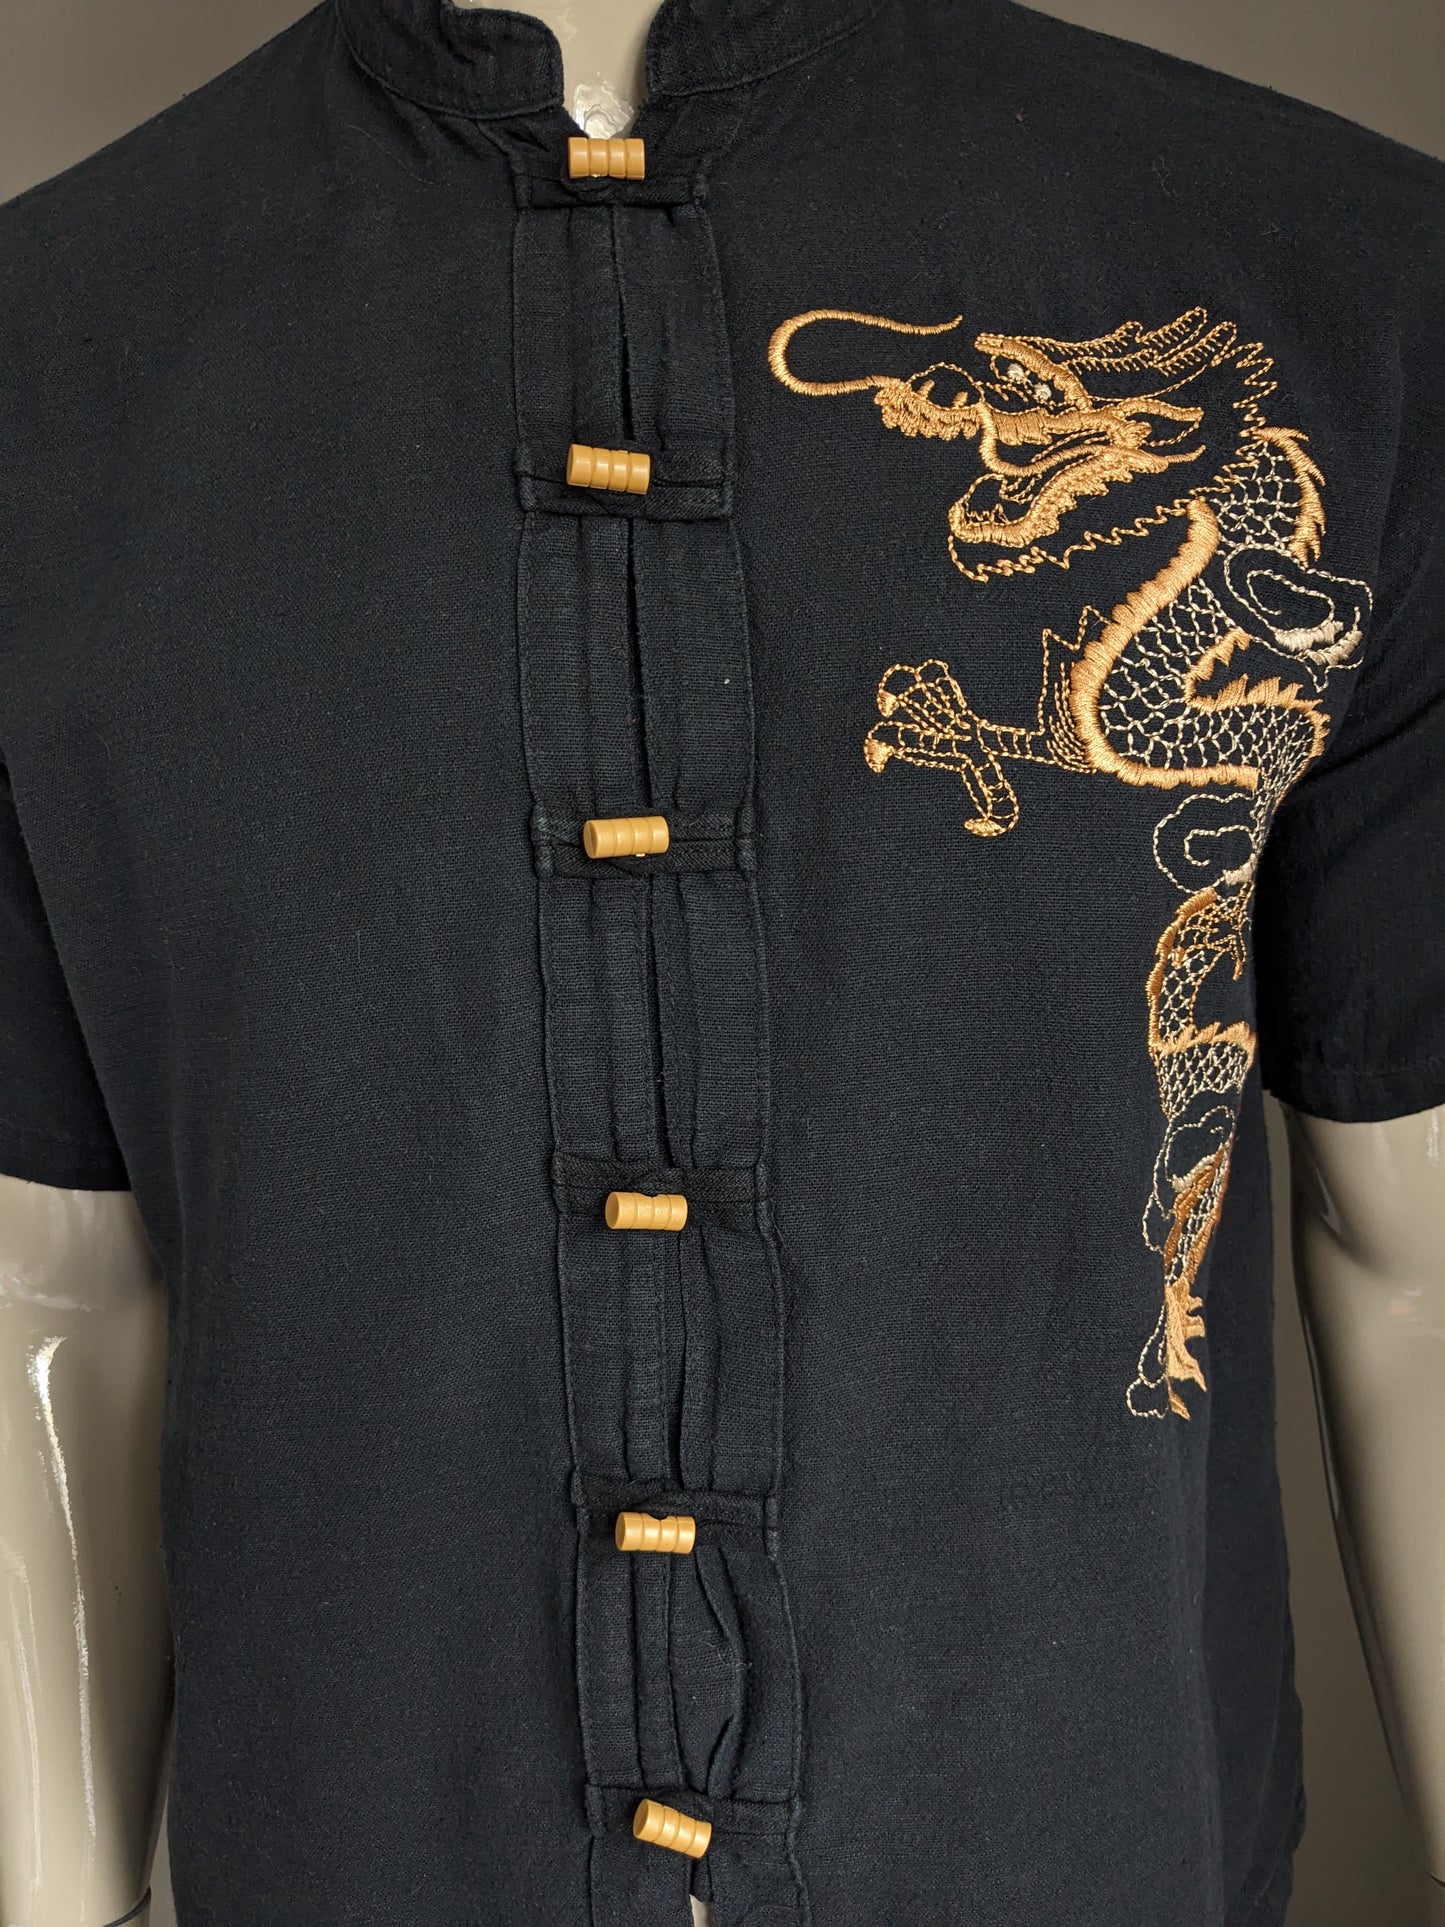 SHIGT RAZIA Vintage à manches courtes avec mao / agriculteur / collier surélevé. Noir avec dragon brodé. Taille L.